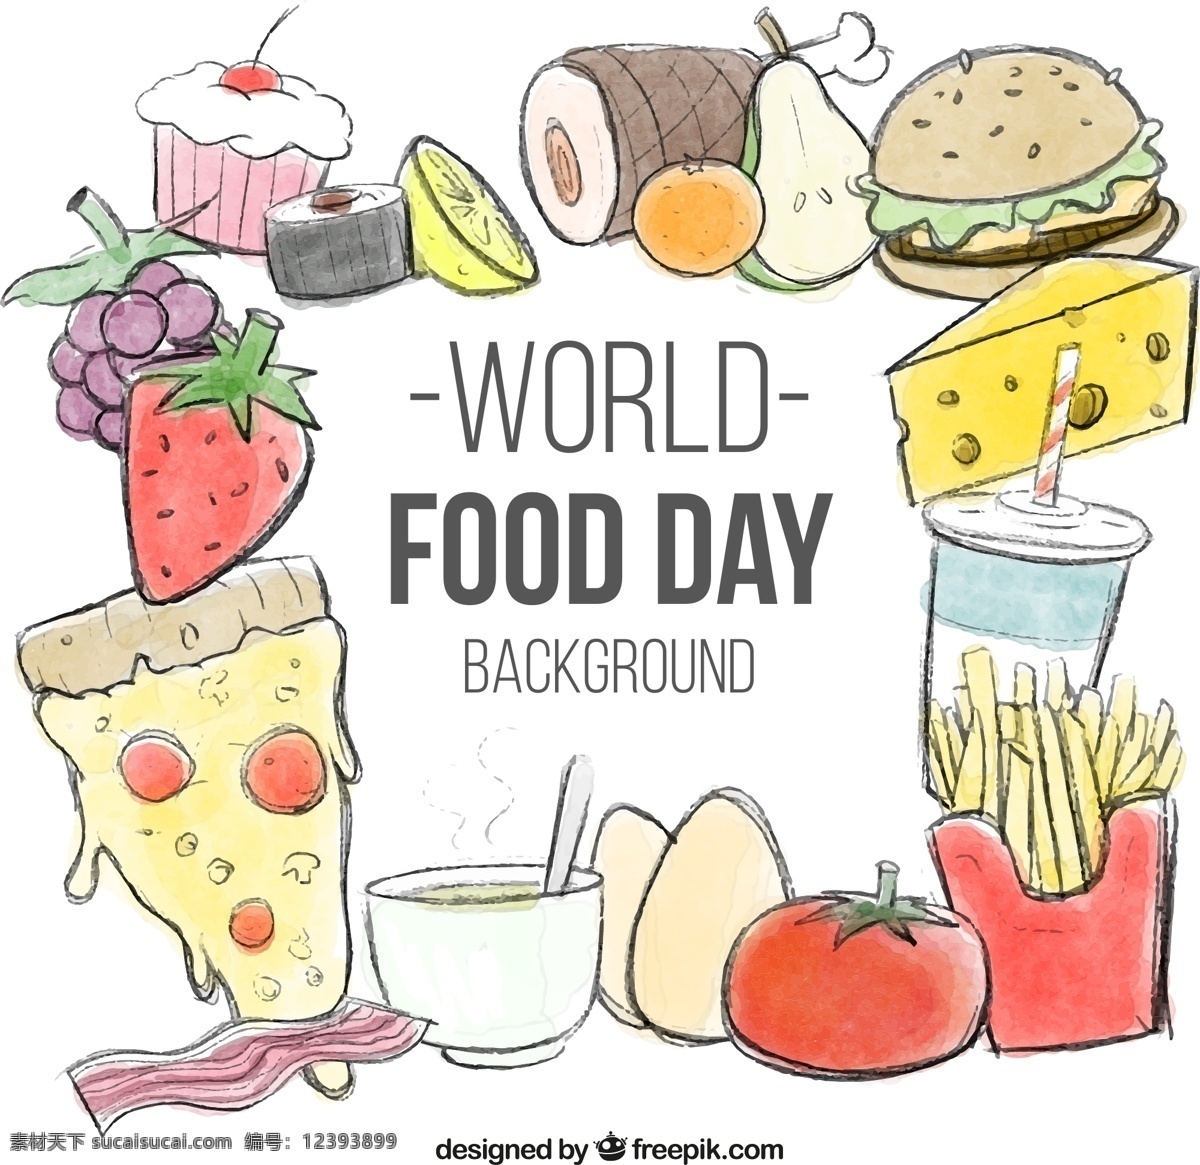 彩绘 世界 粮食 日 食物 插画 矢量 彩色 手绘 蔬菜 美食 快餐 汉堡